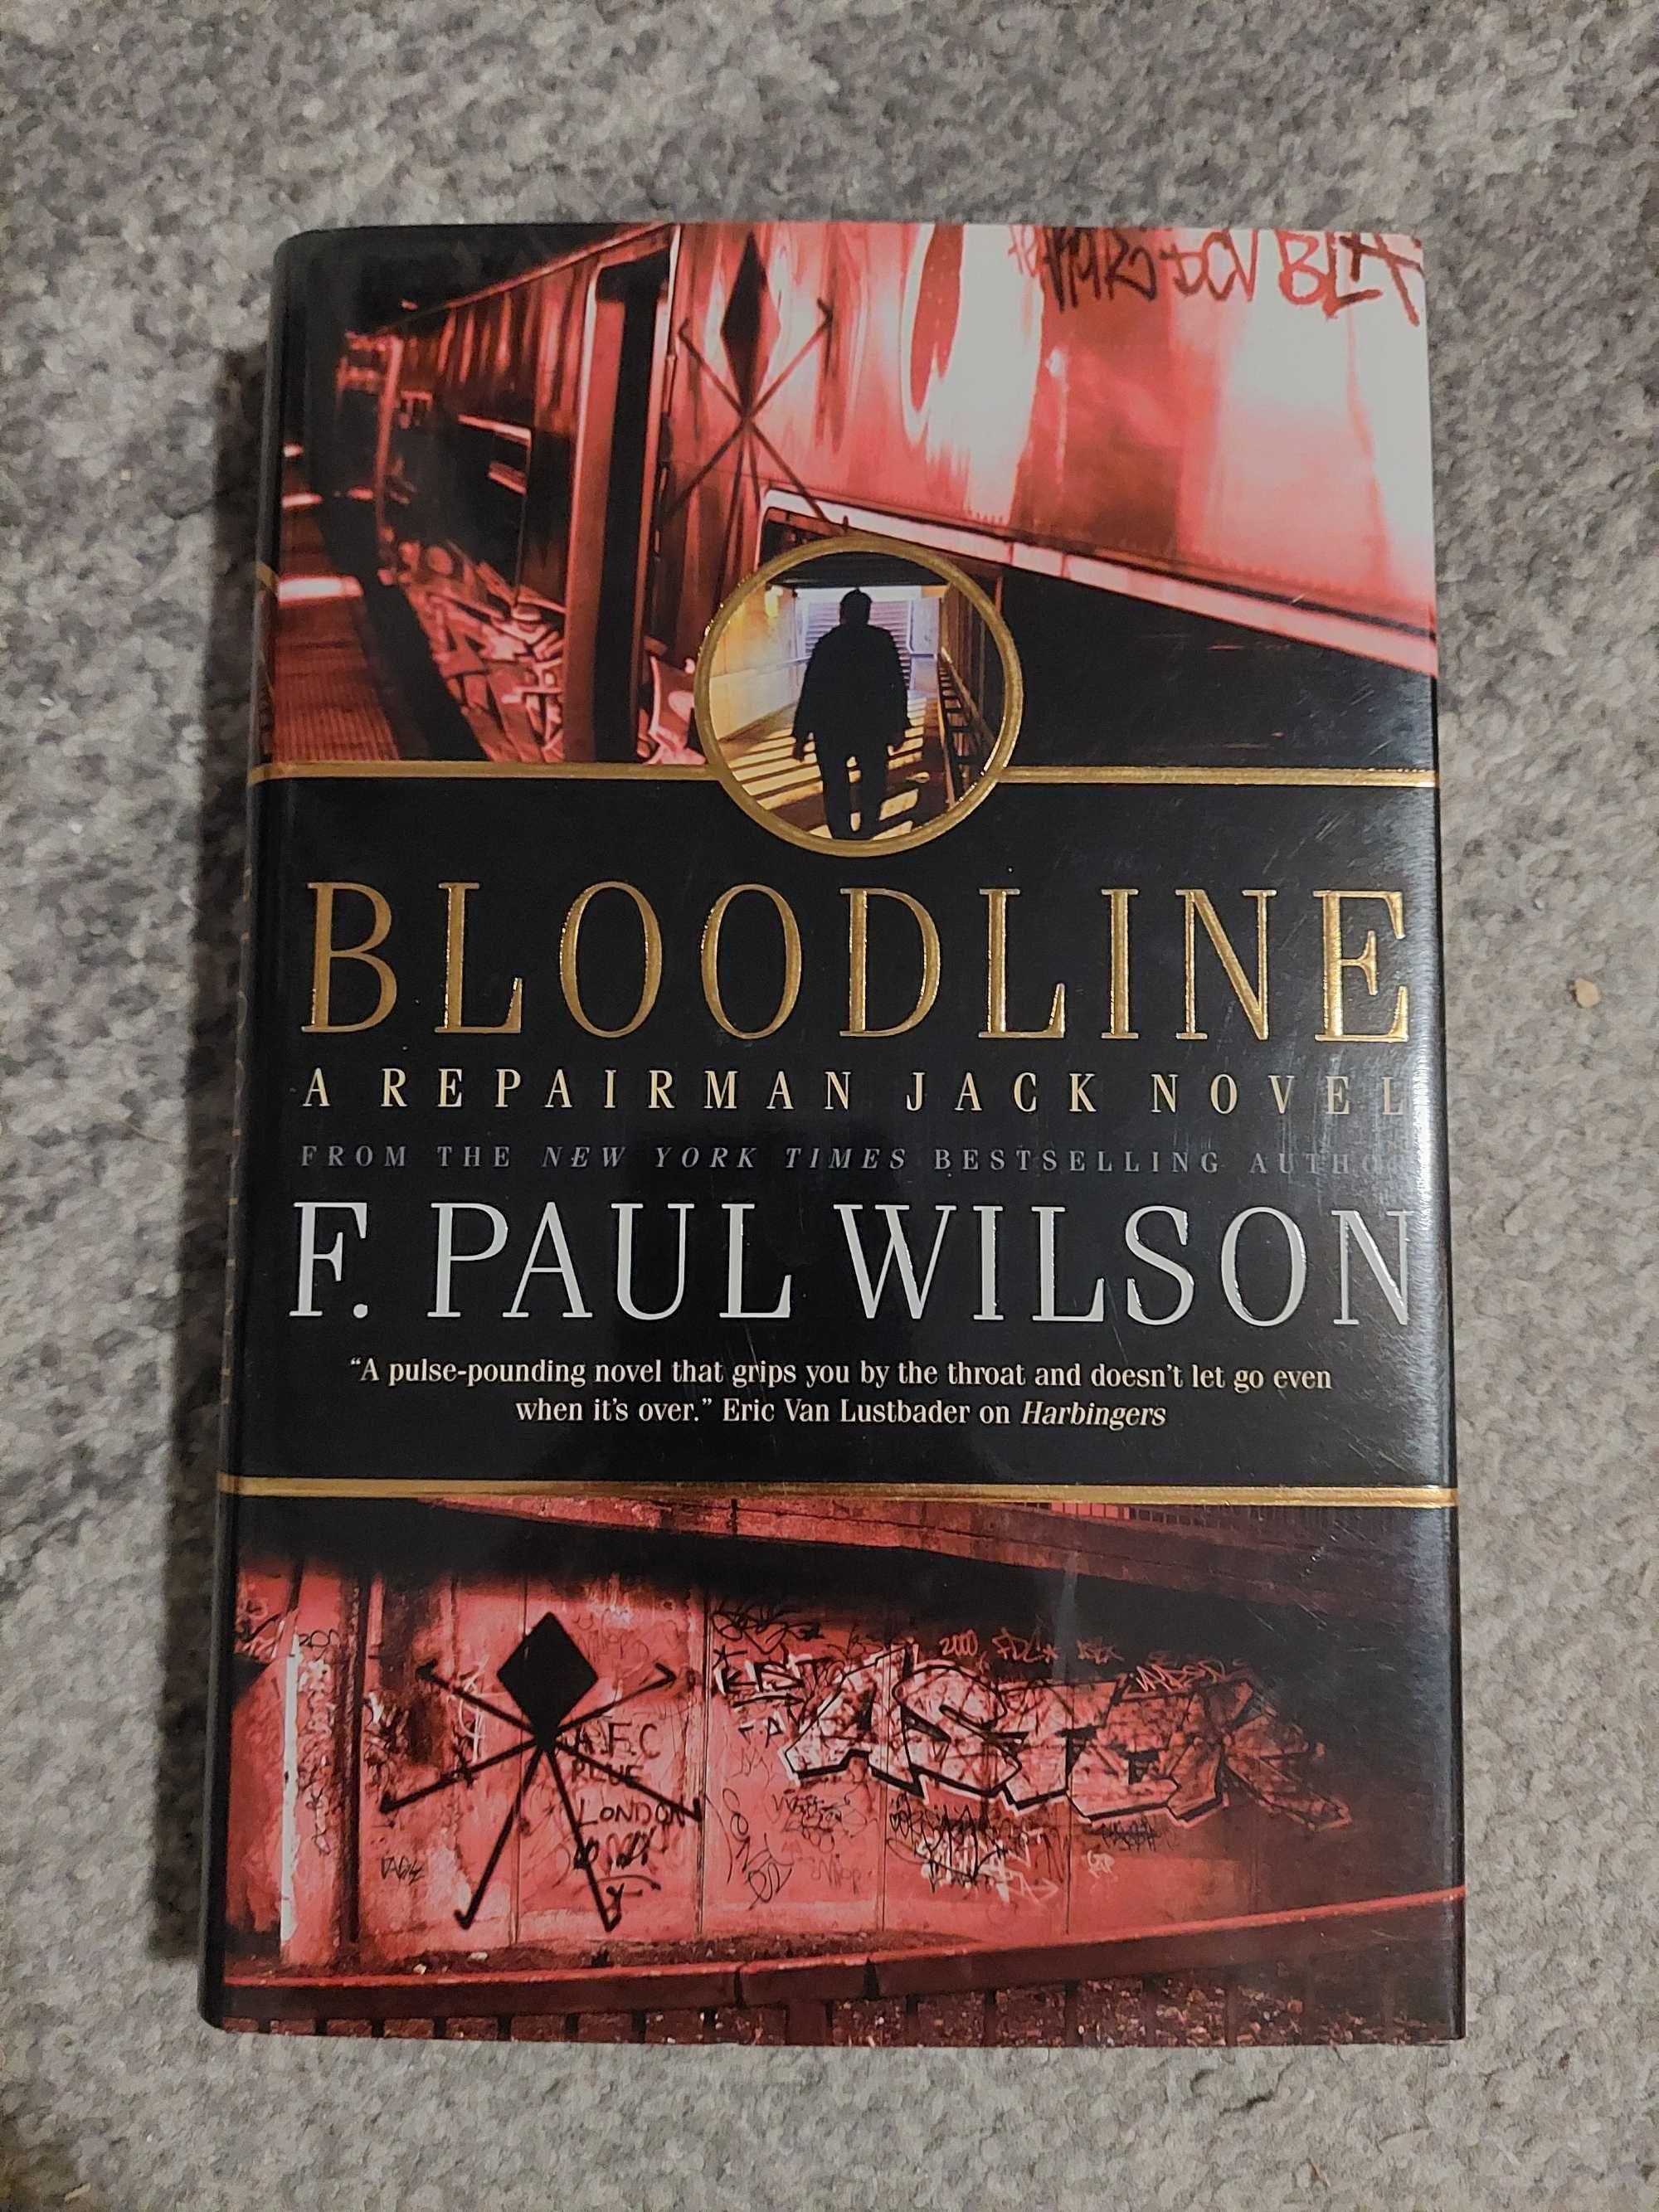 Bloodline - F. PAUL WILSON (Repairman Jack 11) (j. ang.)